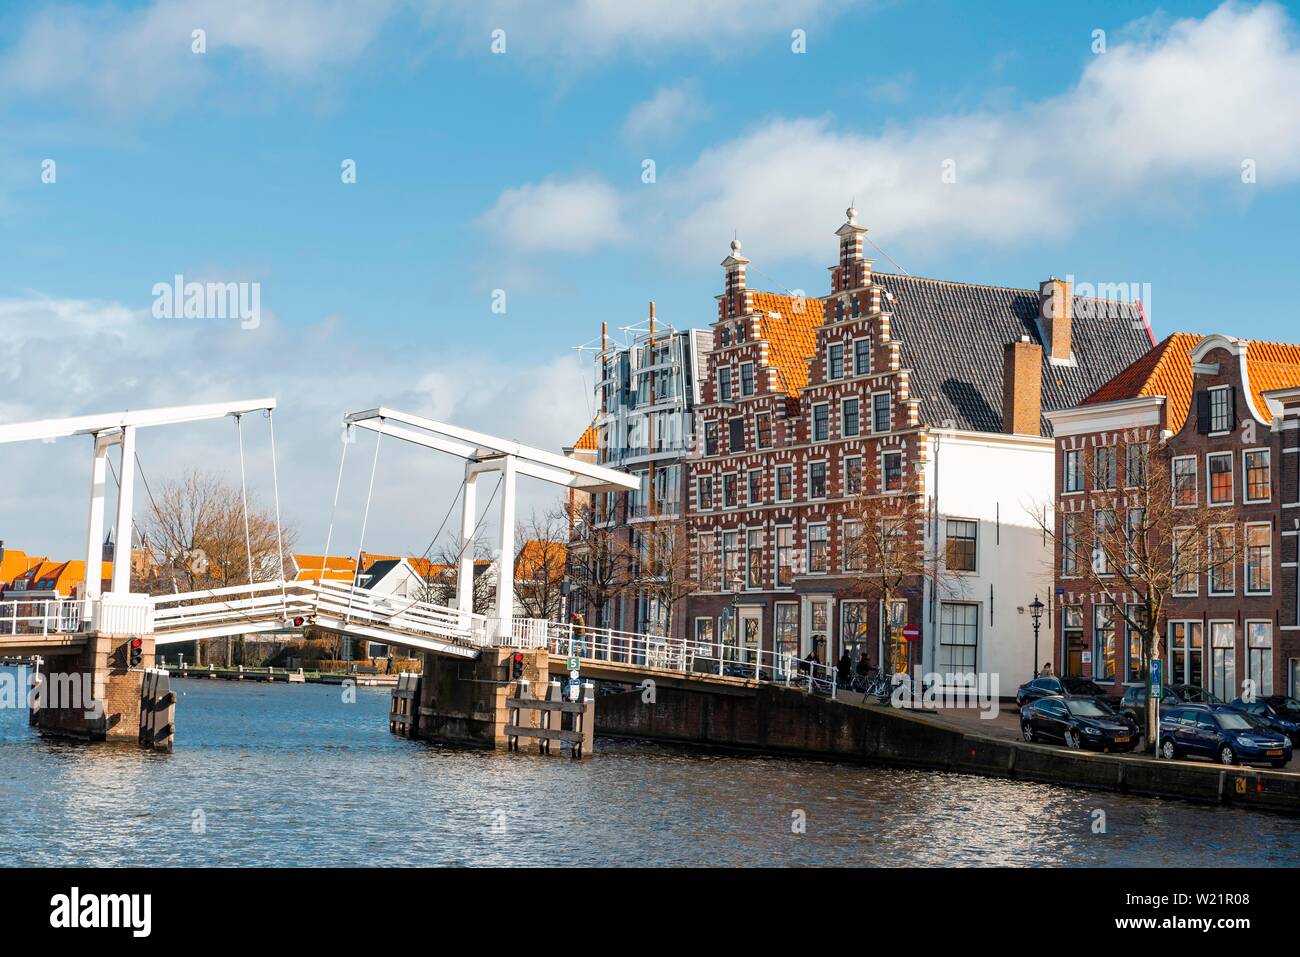 Pont-levis sur la rivière Binnen Spaarne, maisons historiques, Haarlem, province de la Hollande du Nord, Hollande, Pays-Bas Banque D'Images